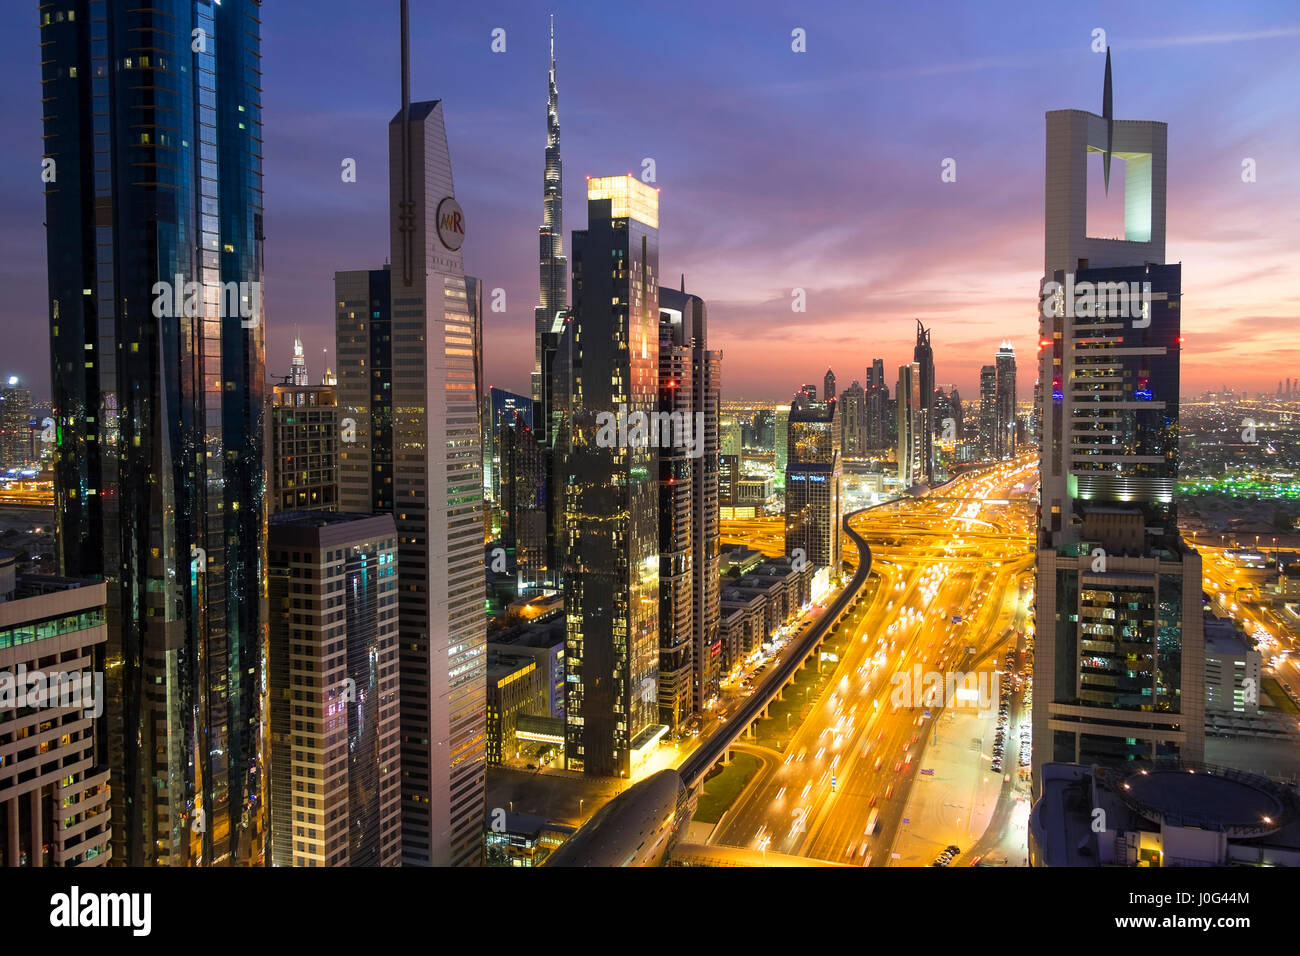 Portrait au crépuscule sur Downtown & Sheikh Zayed Road en direction de la tour Burj Kalifa, Dubaï, Émirats arabes unis, ÉMIRATS ARABES UNIS Banque D'Images